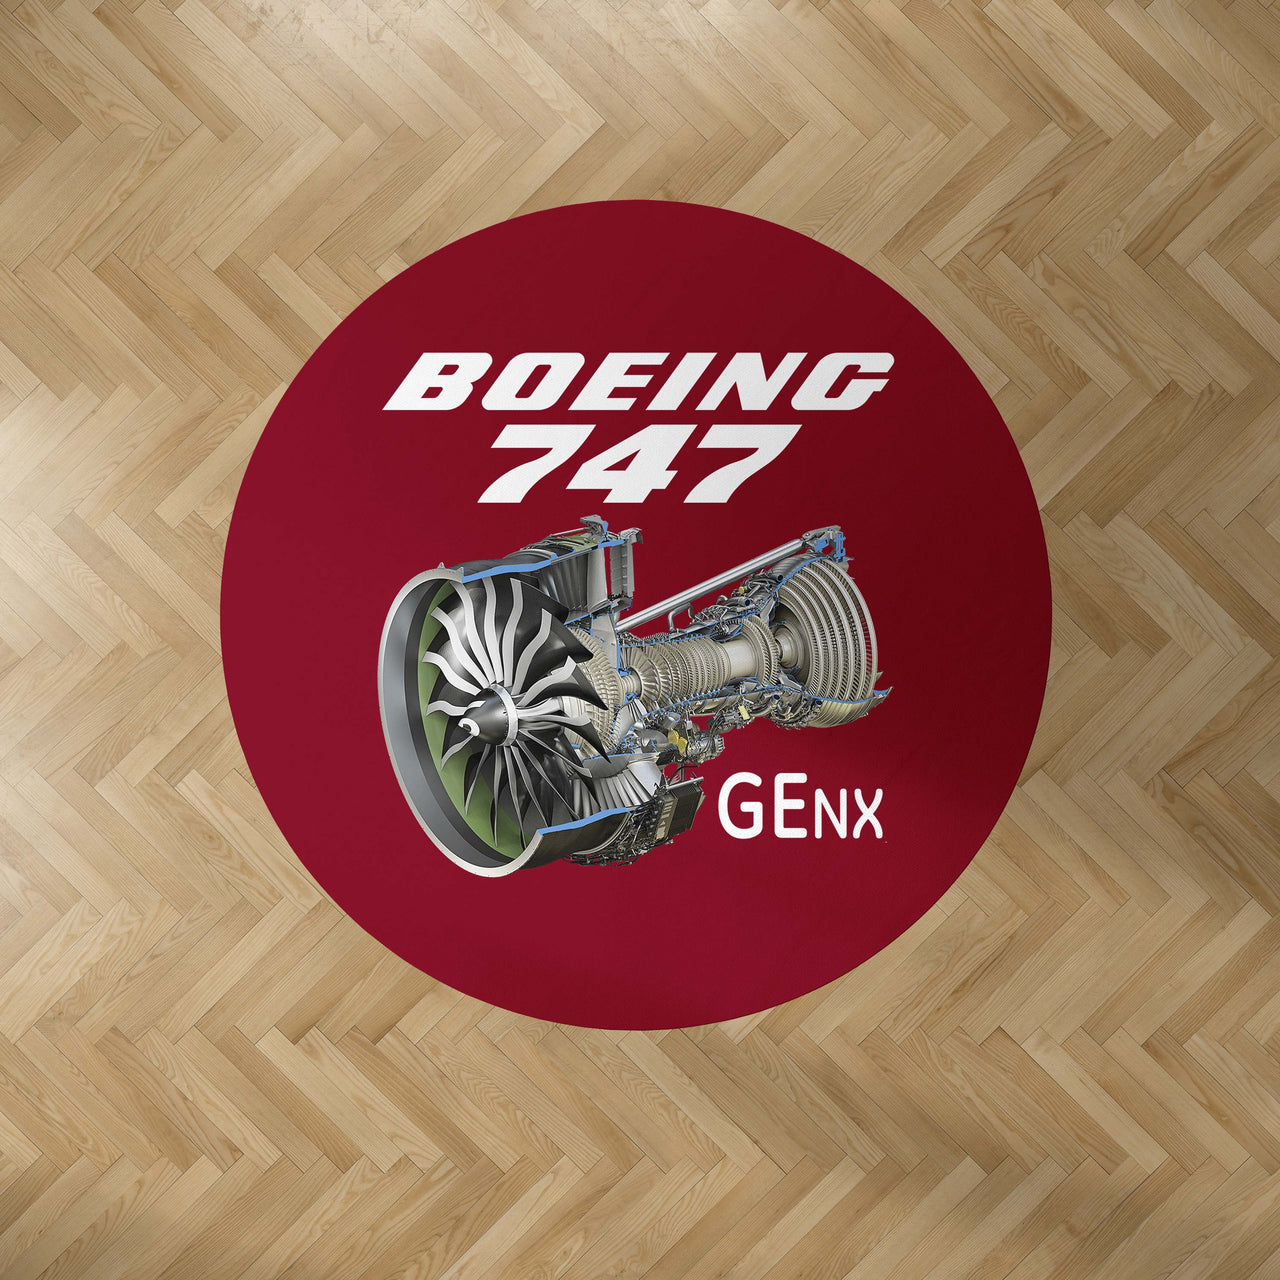 Boeing 747 & GENX Engine Designed Carpet & Floor Mats (Round)